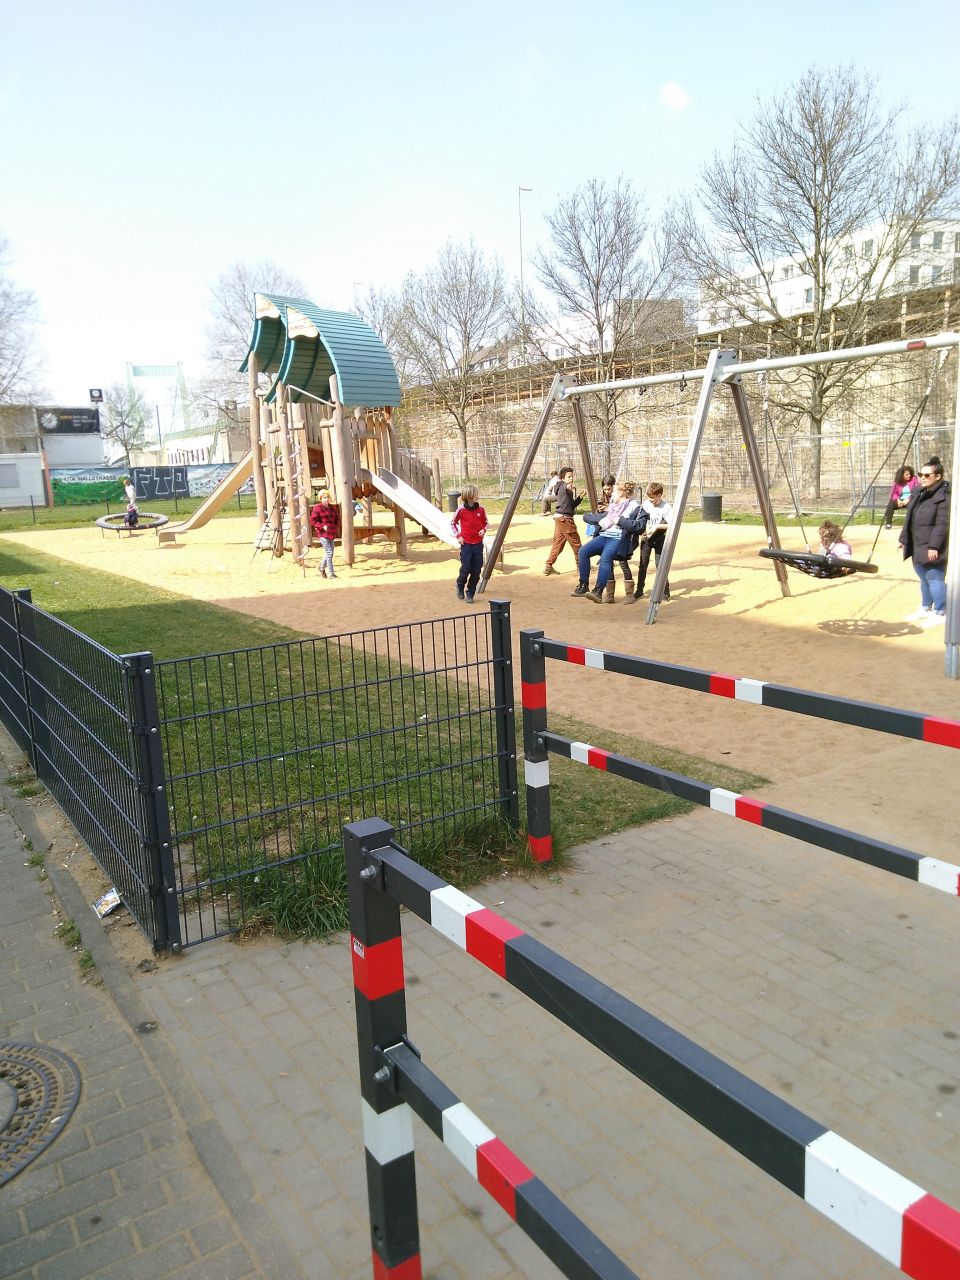 Spielplatz mit Schaukeln und einem großen Spiel- und Klettergerät, inklusive Rutsche. Auf dem Spielplatz sind Erwachsene und Kinder.